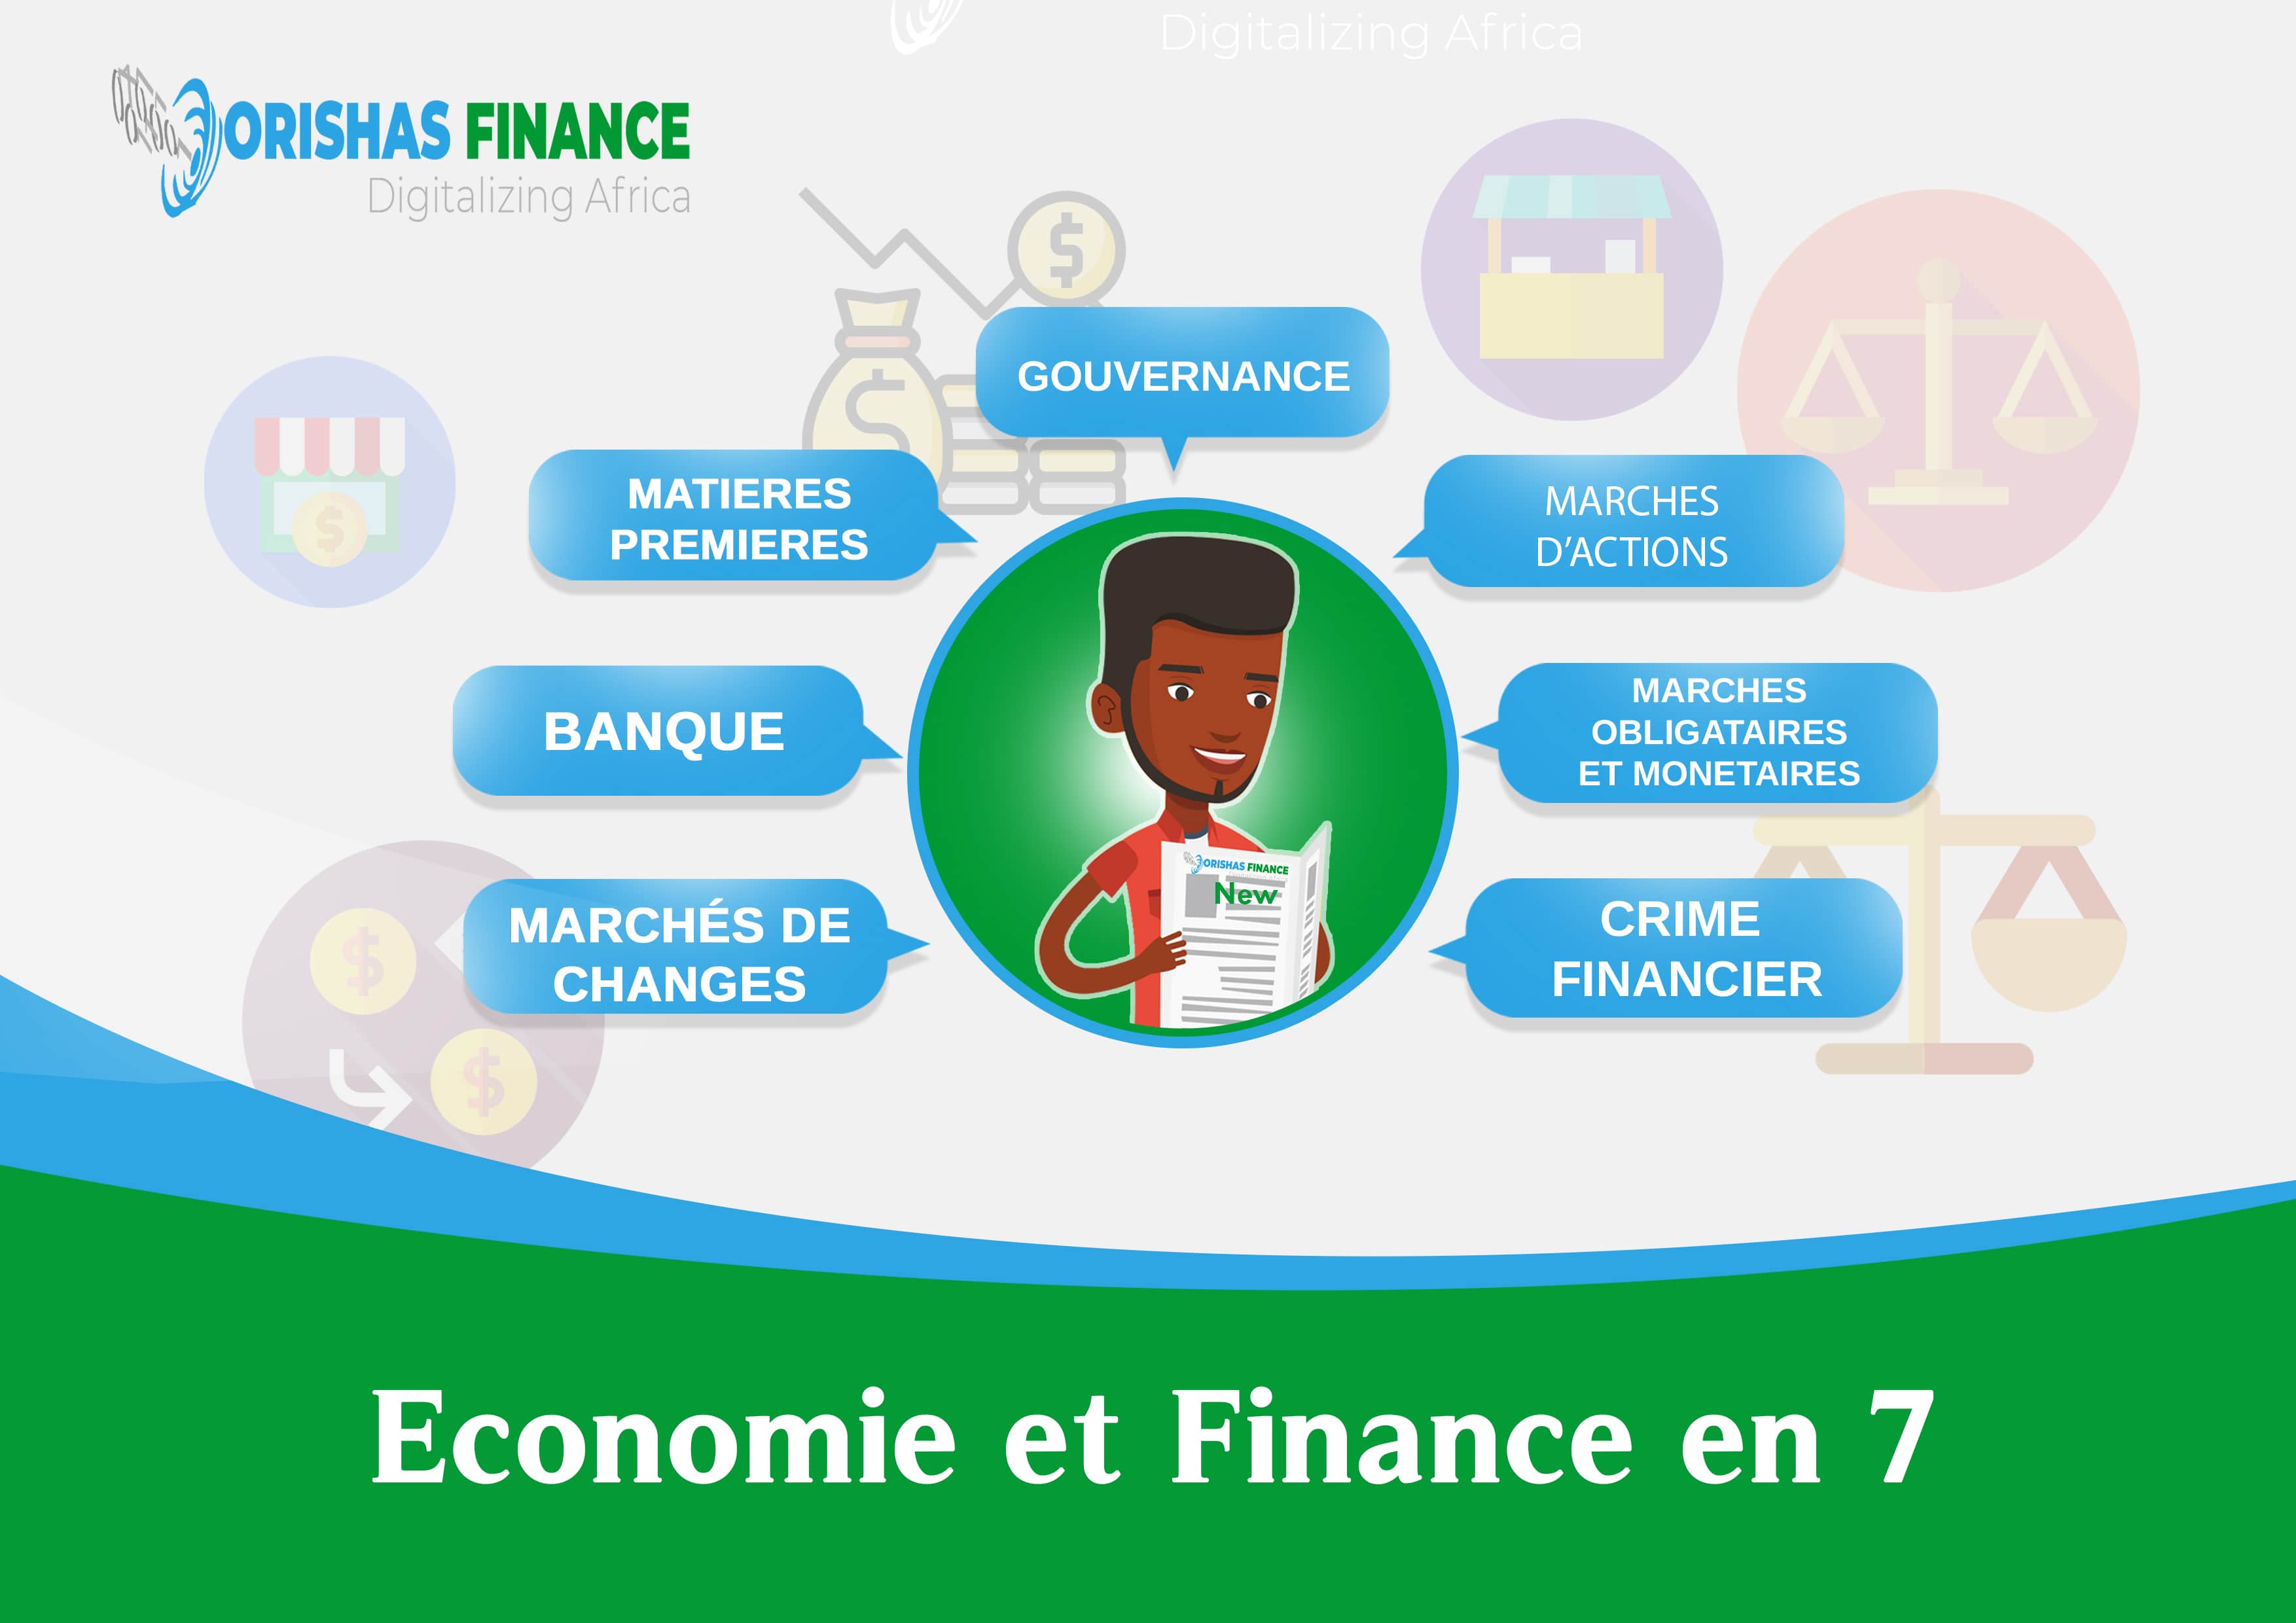  Economie et finance en 7 du 29 Mars au 02 Avril 2021 